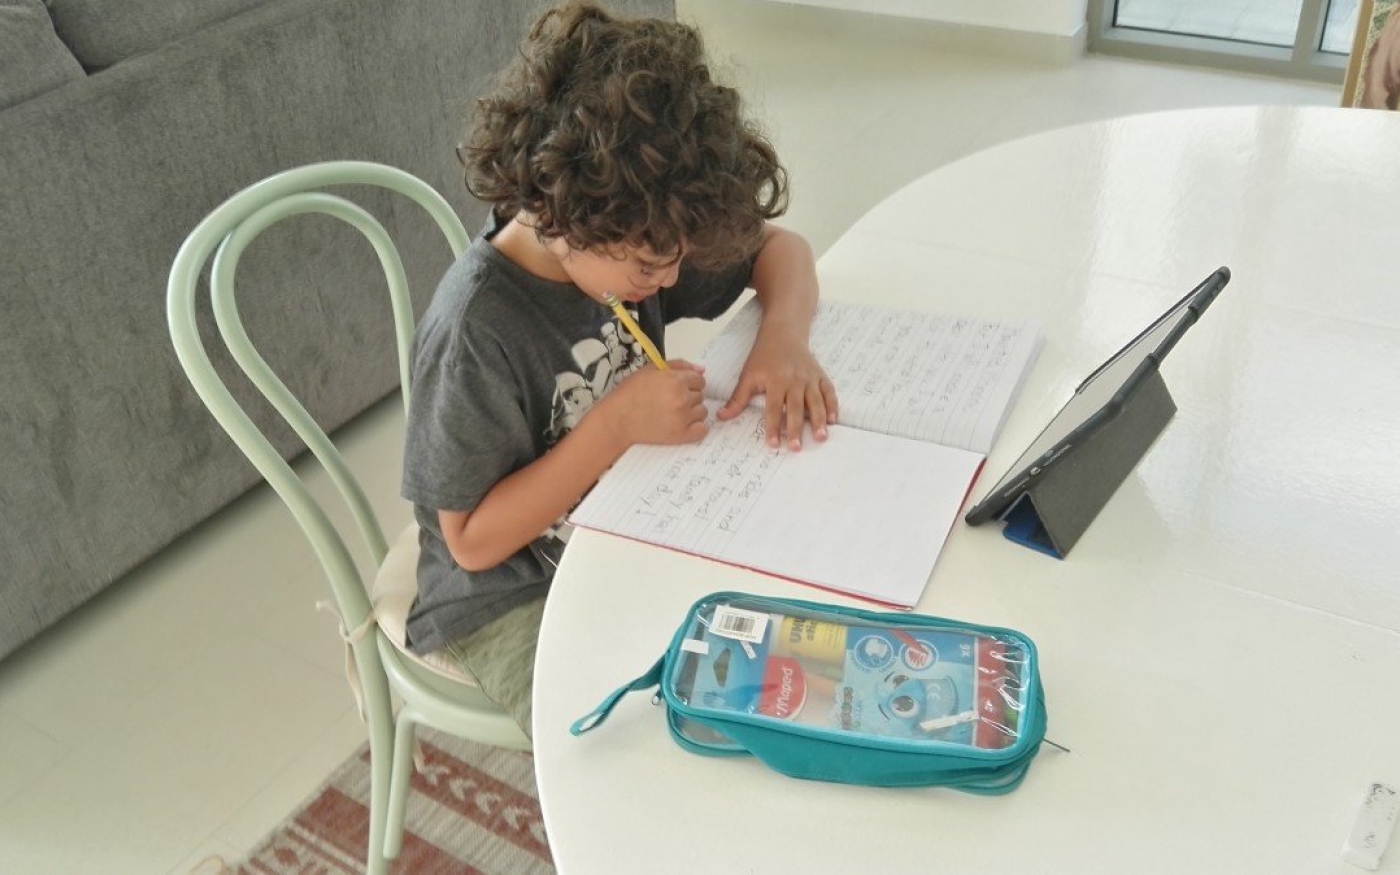 Le fils aîné de Marwah Elimam assiste quotidiennement à des cours en ligne en attendant la réouverture des écoles à Dubaï (Marwah Elimam)